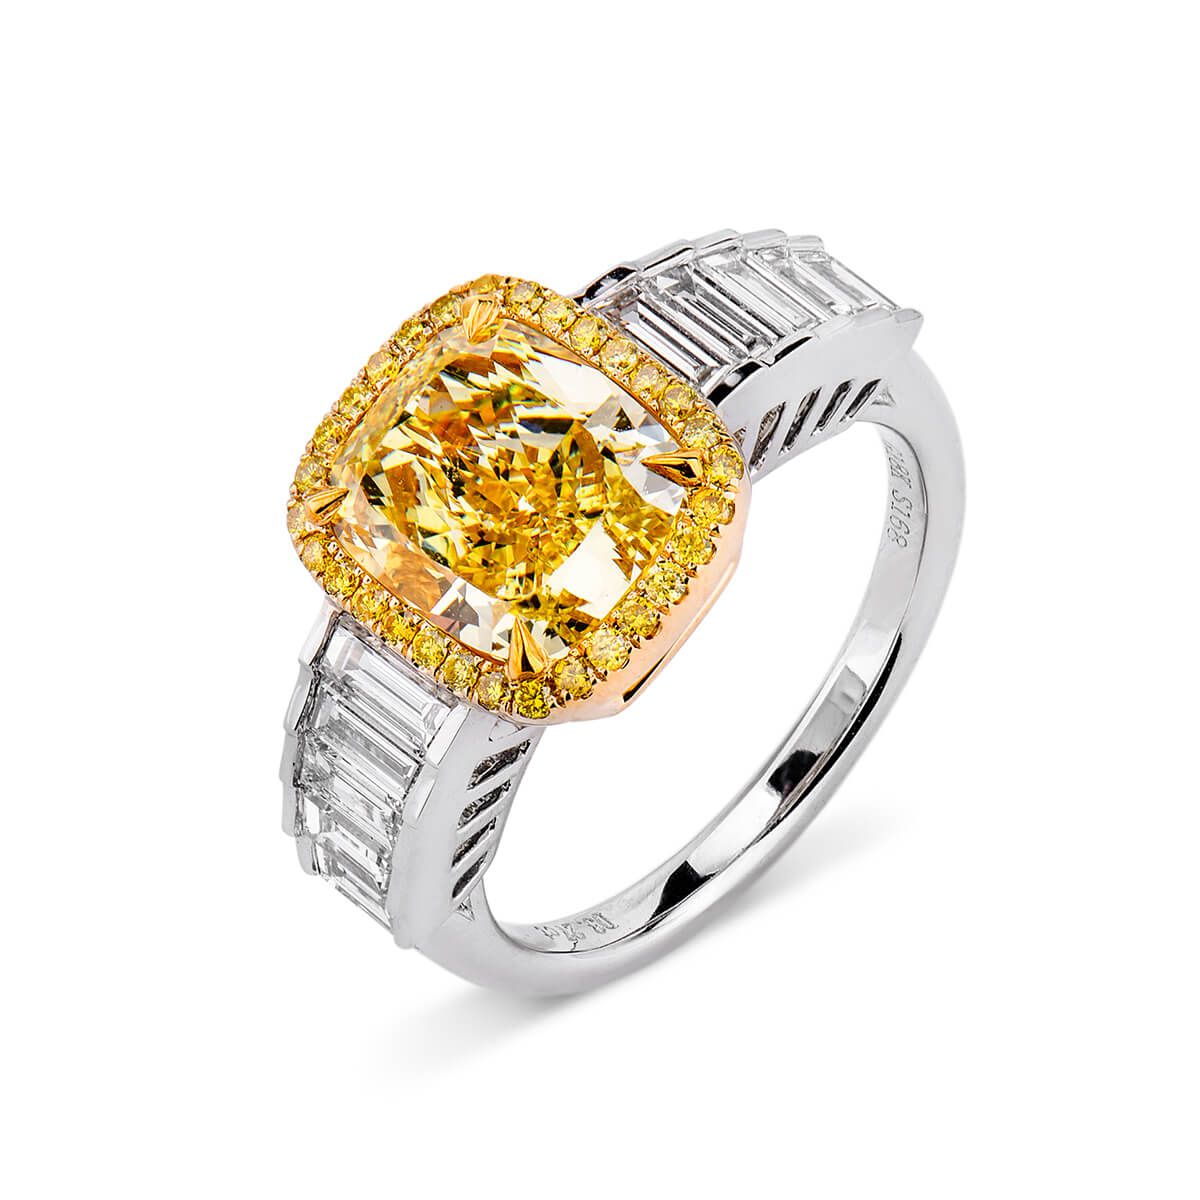 Fancy Intense Yellow Diamond Ring, 3.27 Ct. (4.19 Ct. TW), Cushion shape, GIA Certified, 2175137047